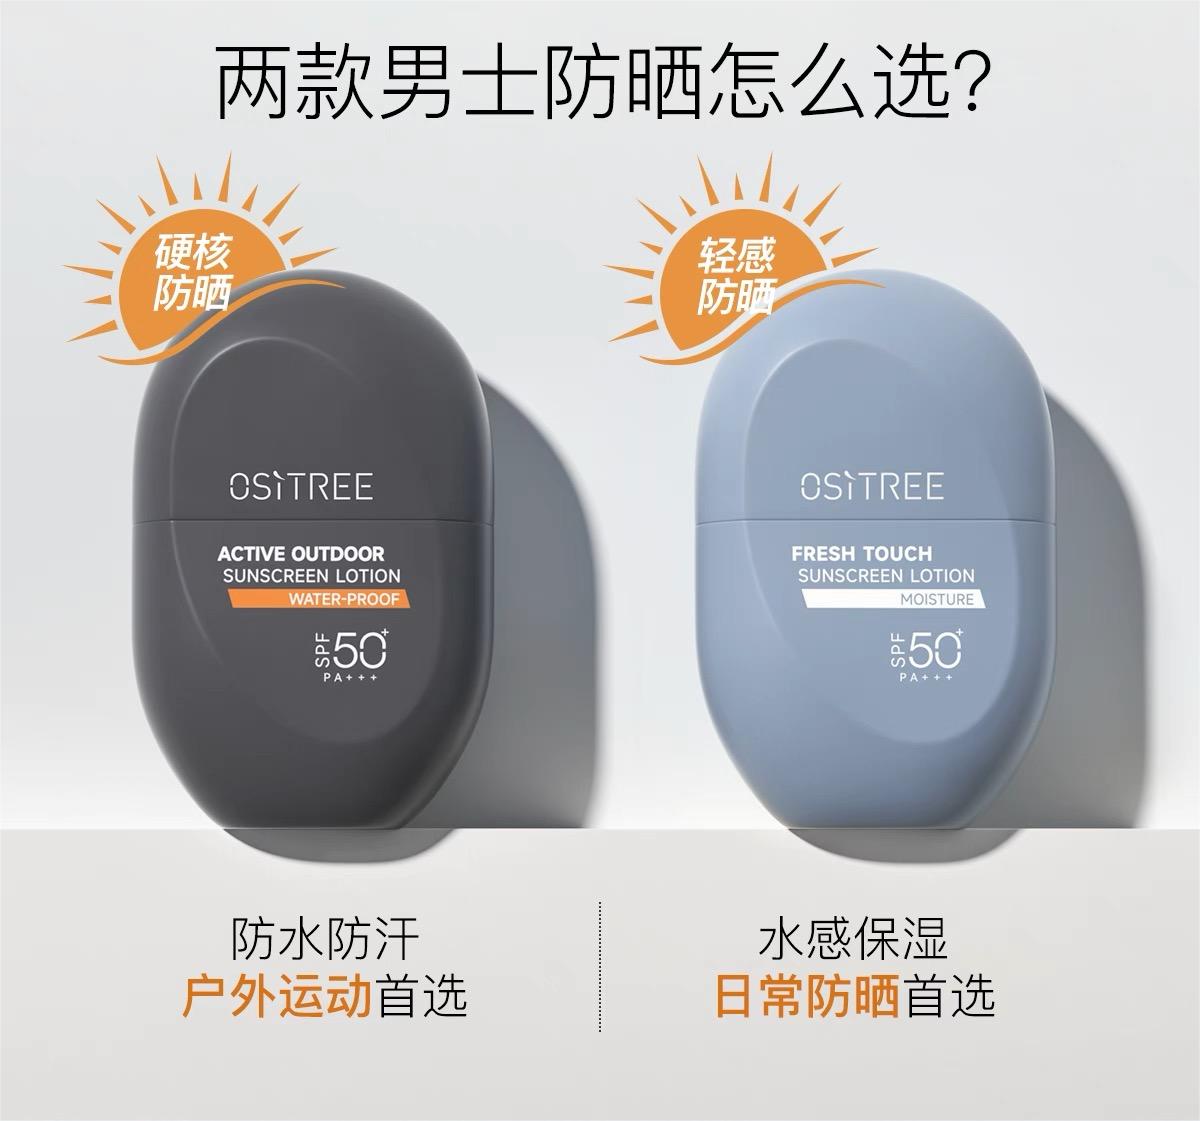 Ositree Men's Sunscreen Lotion 45g 柳丝木男士防晒乳